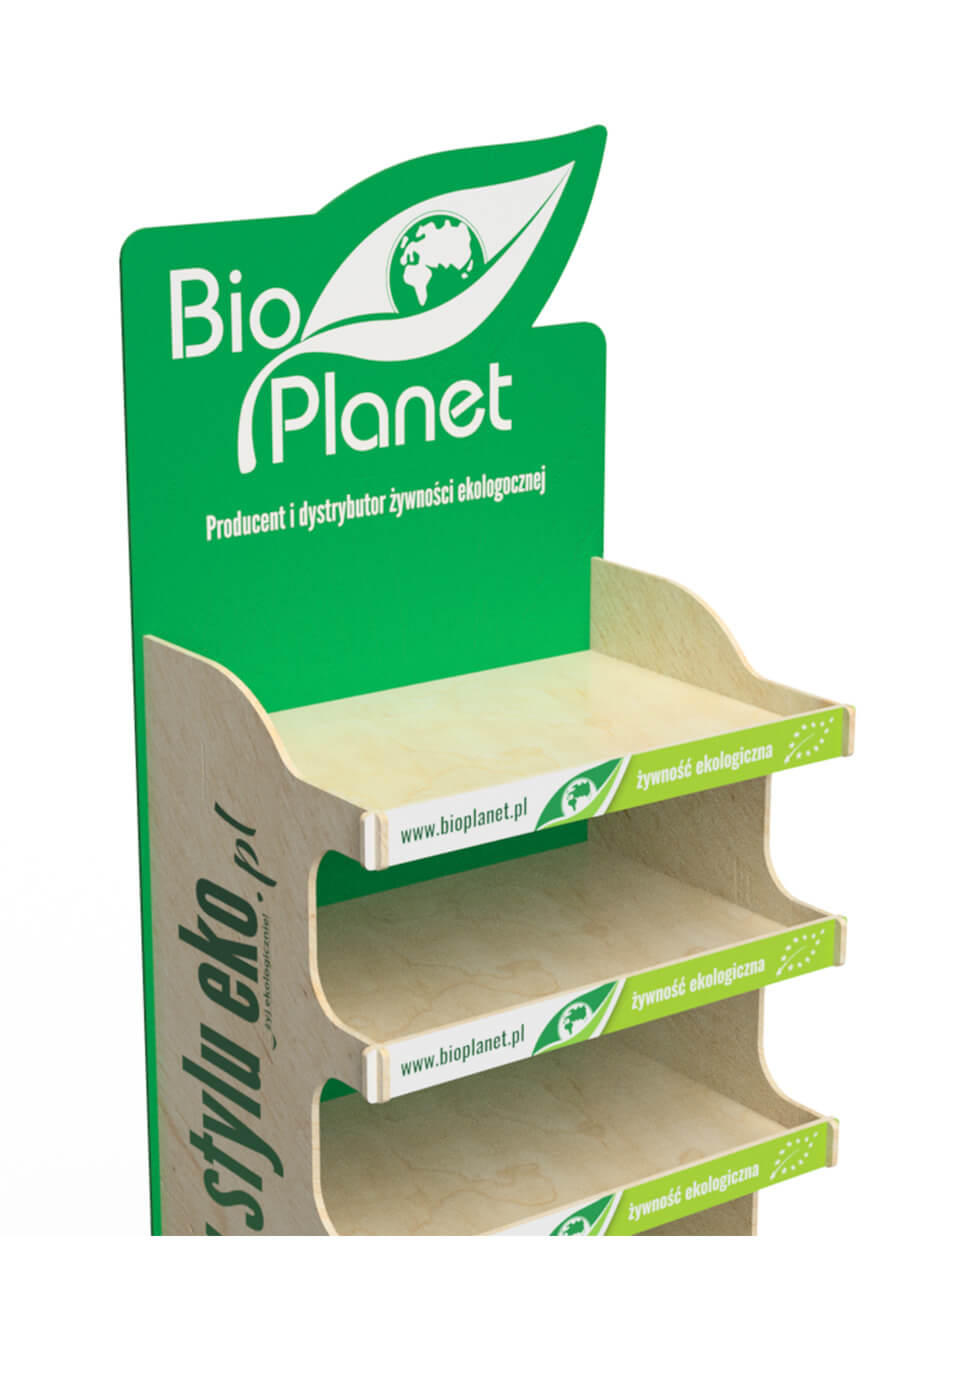 Ekspozytor na ekologiczne produkty spożywcze Bio Planet - przykład 480